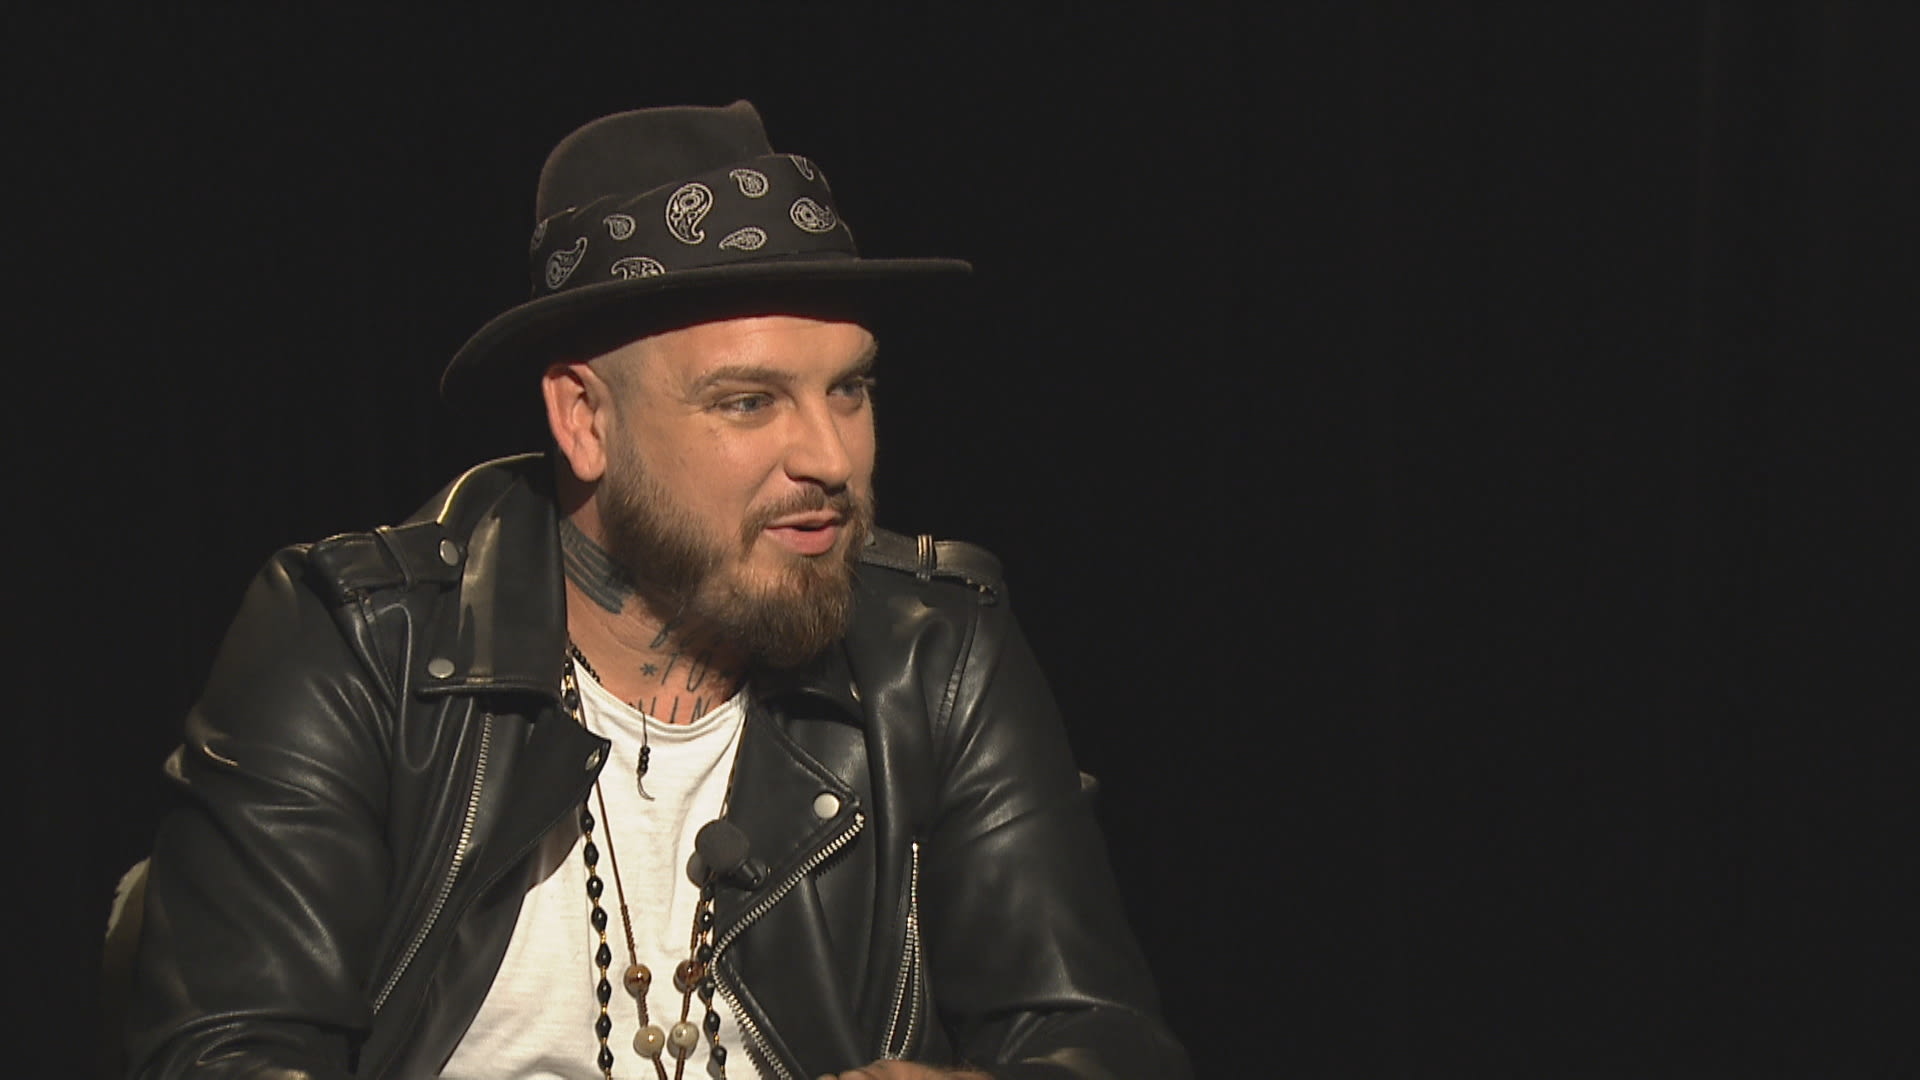 Frontman kapely Rybičky 48 Jakub Ryba byl hostem pořadu Povídej na CNN Prima NEWS. 